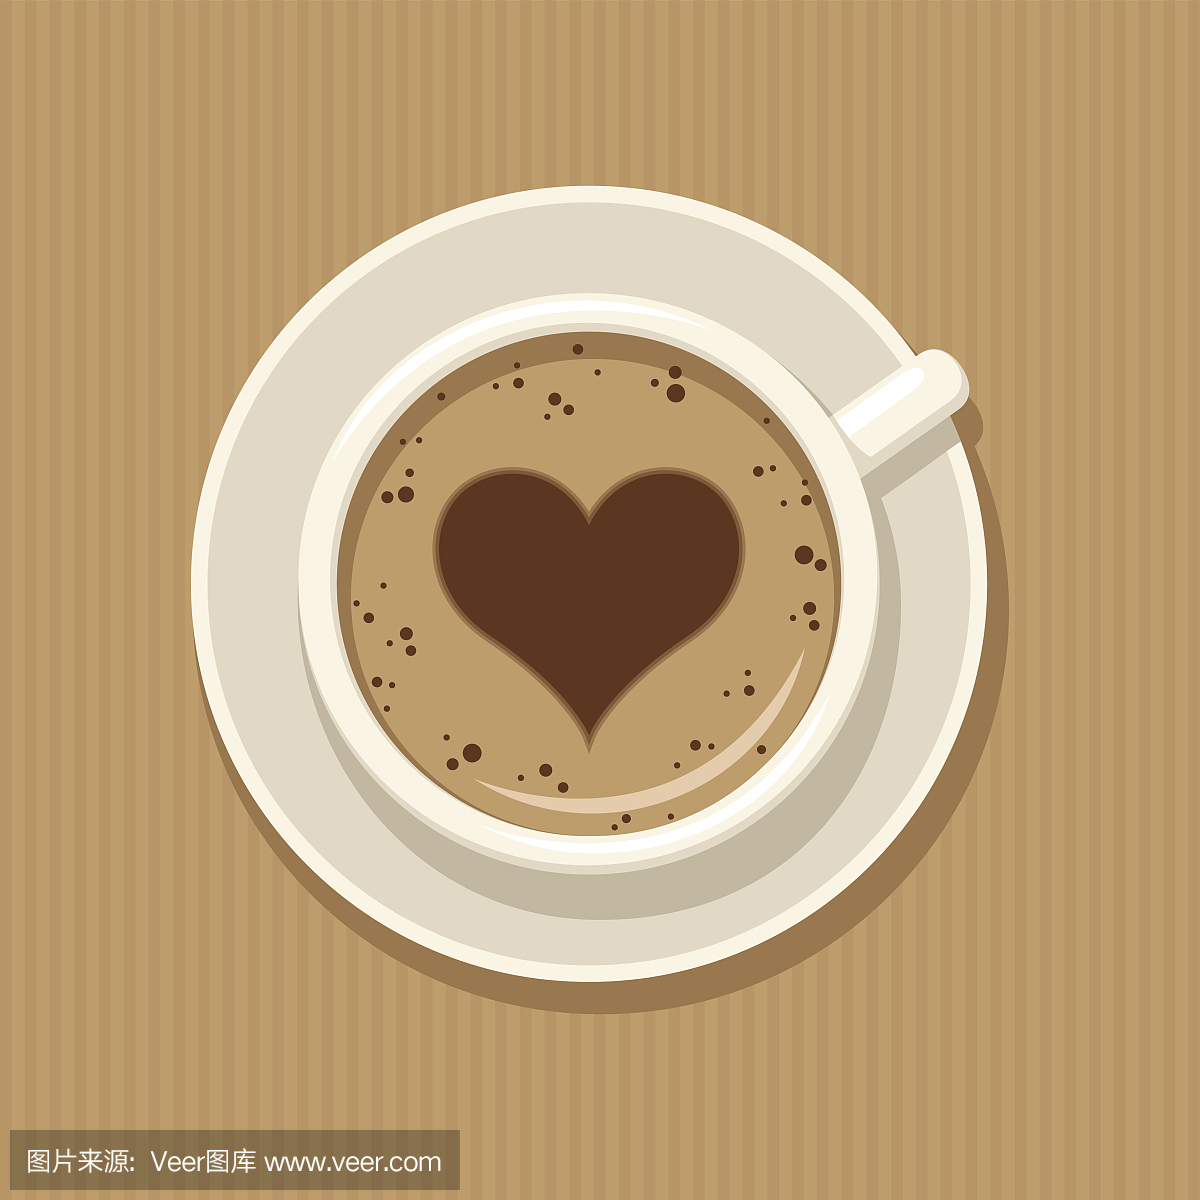 一杯咖啡与心脏的卡通形象